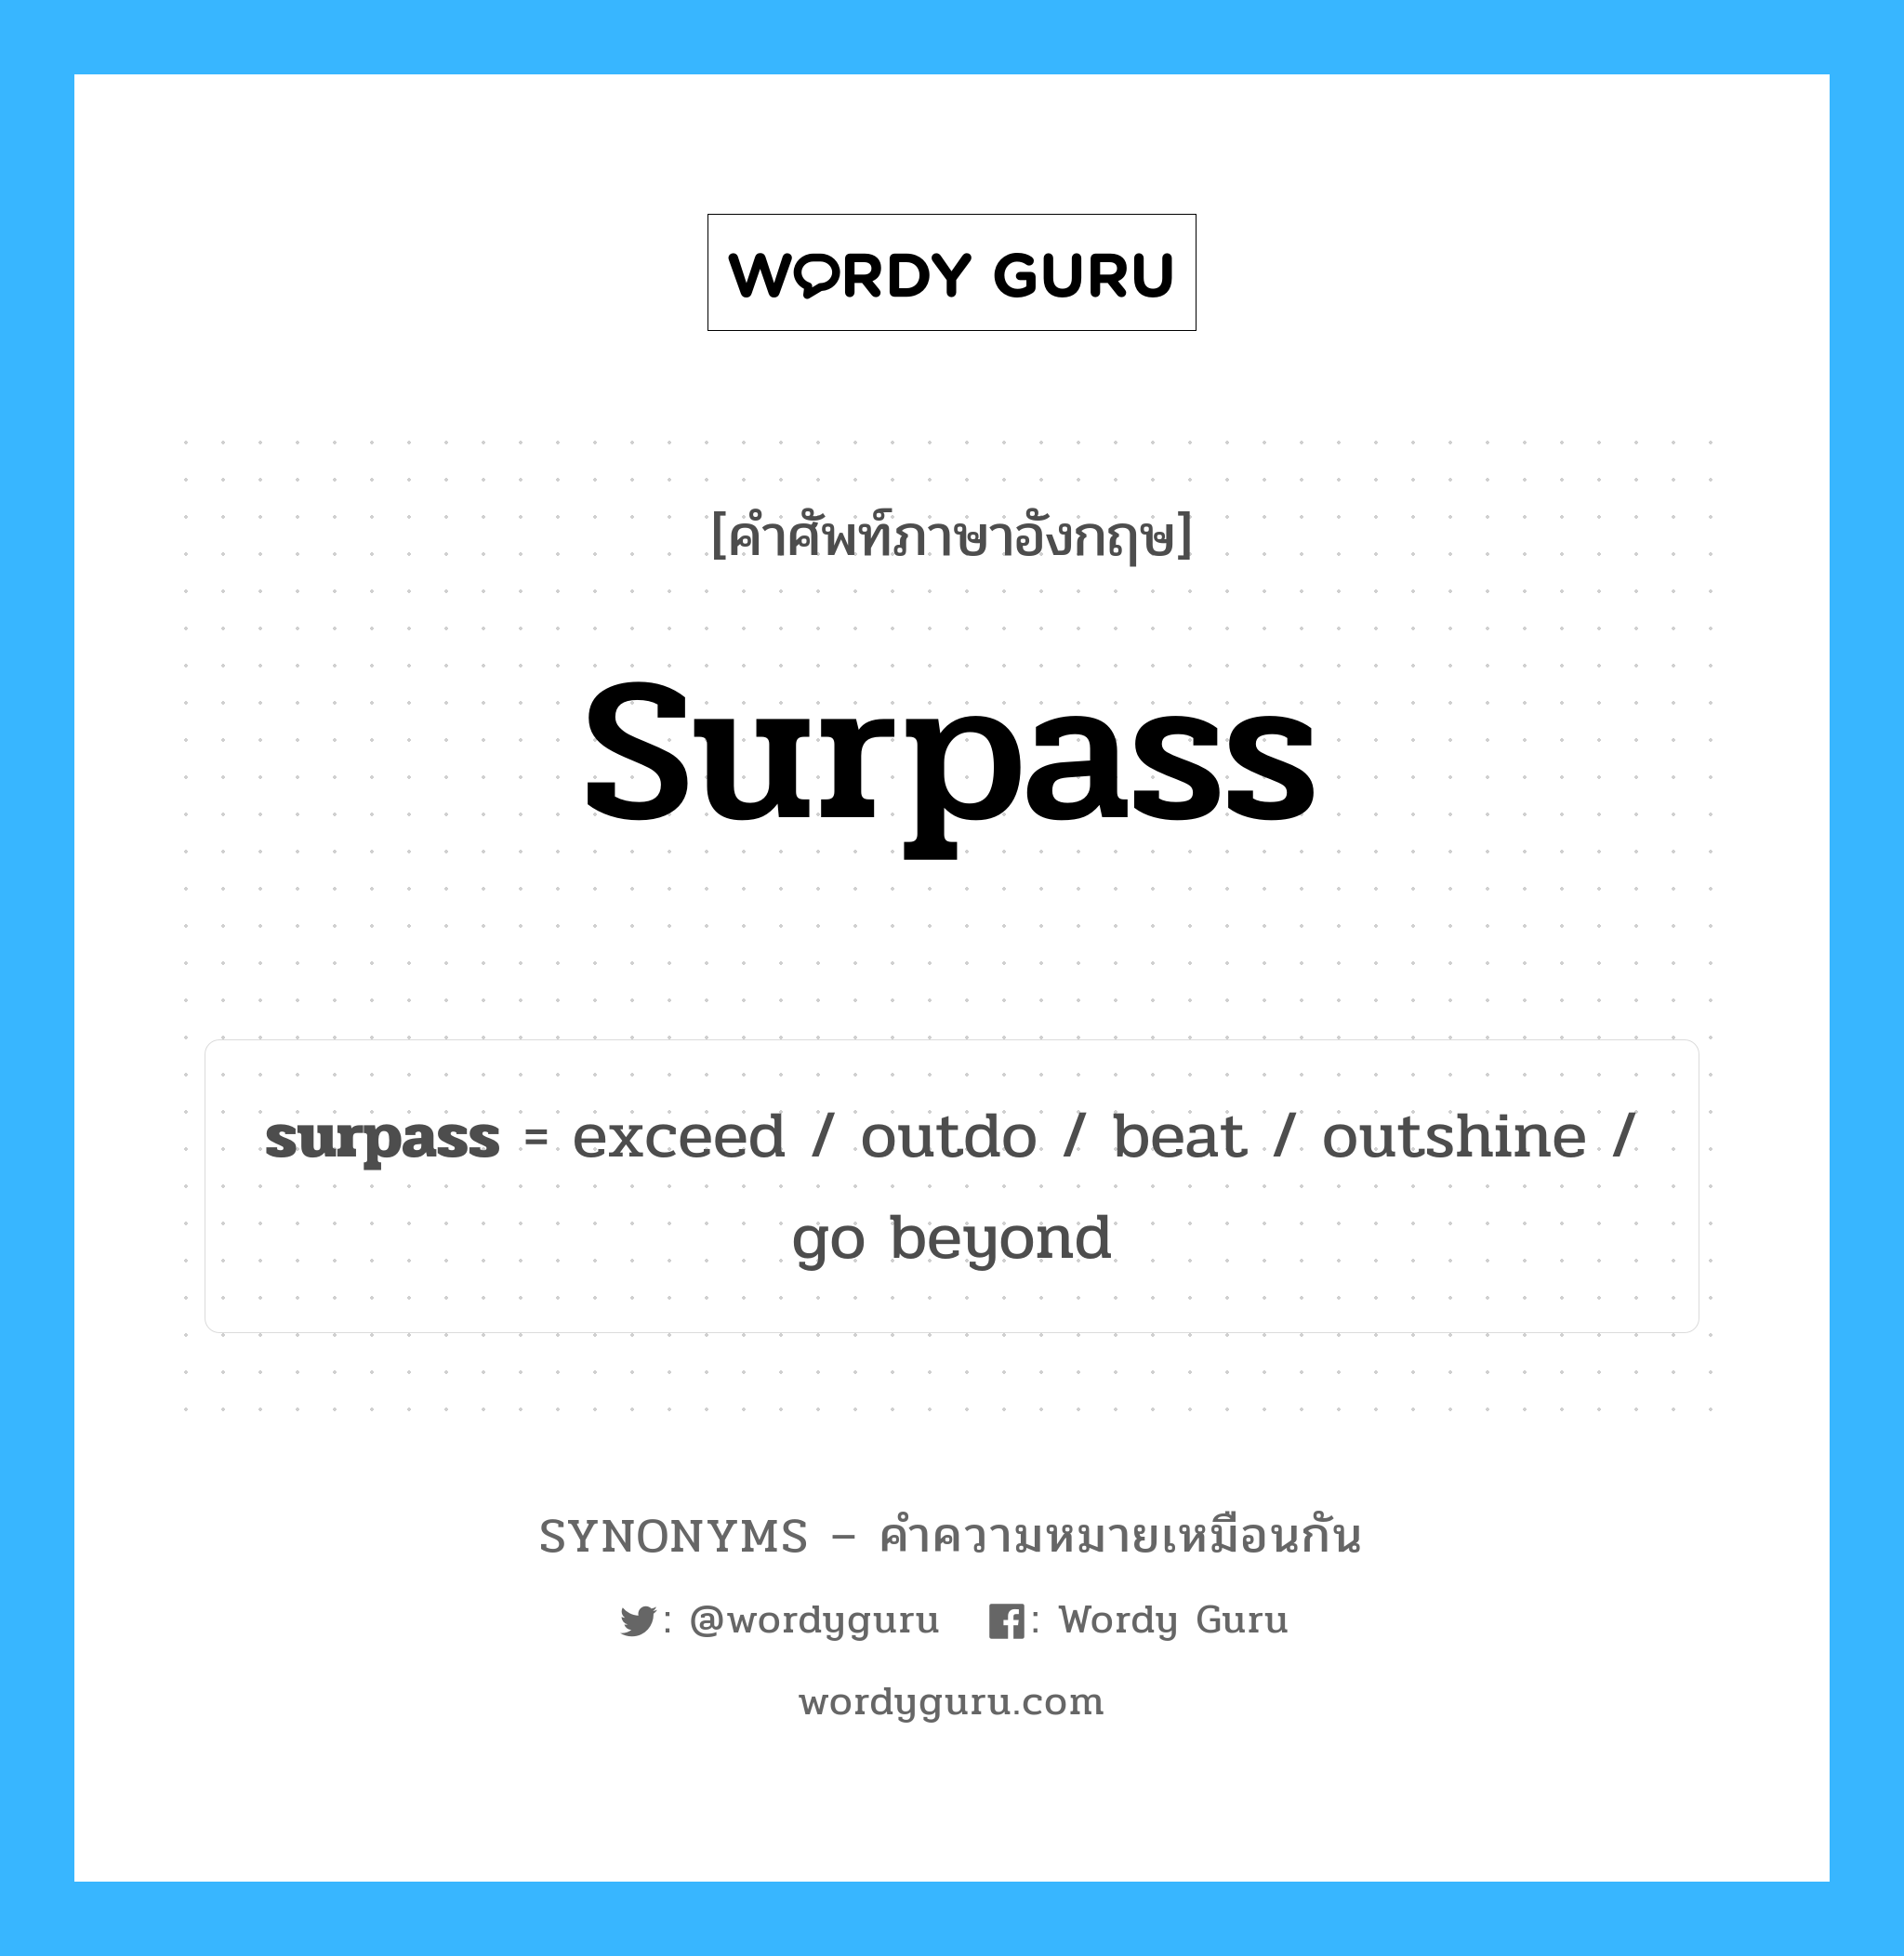 surpass เป็นหนึ่งใน go beyond และมีคำอื่น ๆ อีกดังนี้, คำศัพท์ภาษาอังกฤษ surpass ความหมายคล้ายกันกับ go beyond แปลว่า ก้าวไกล หมวด go beyond